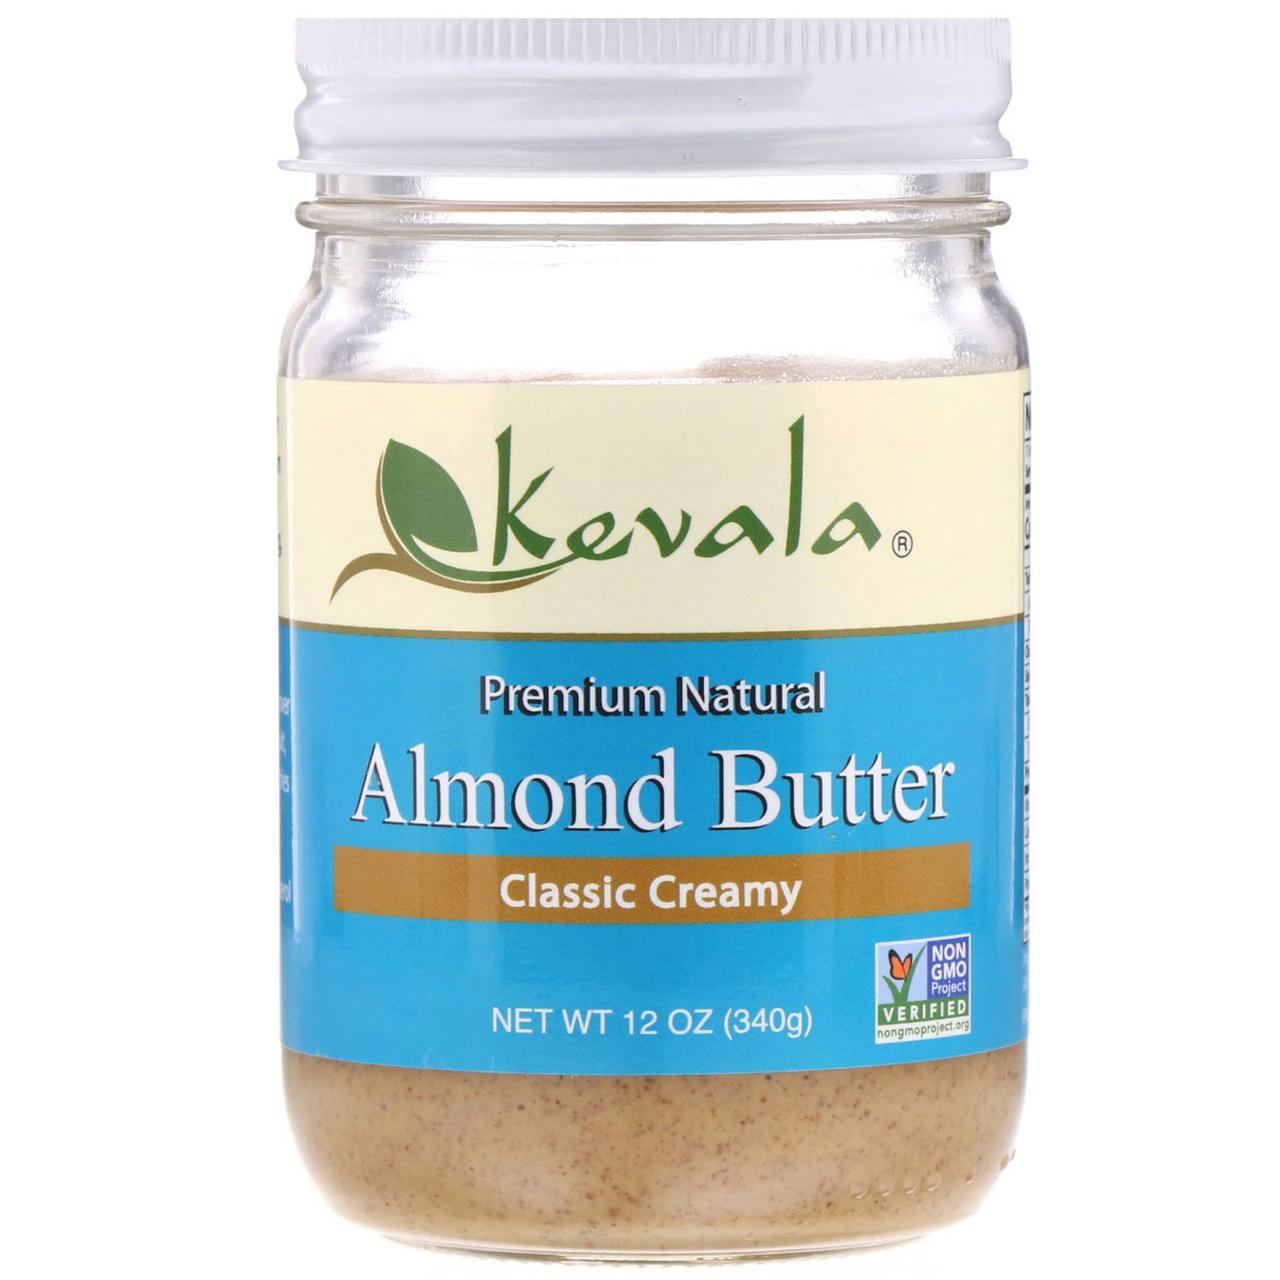 Миндальный крем-масло, Almond Butter, Kevala, 340 г.